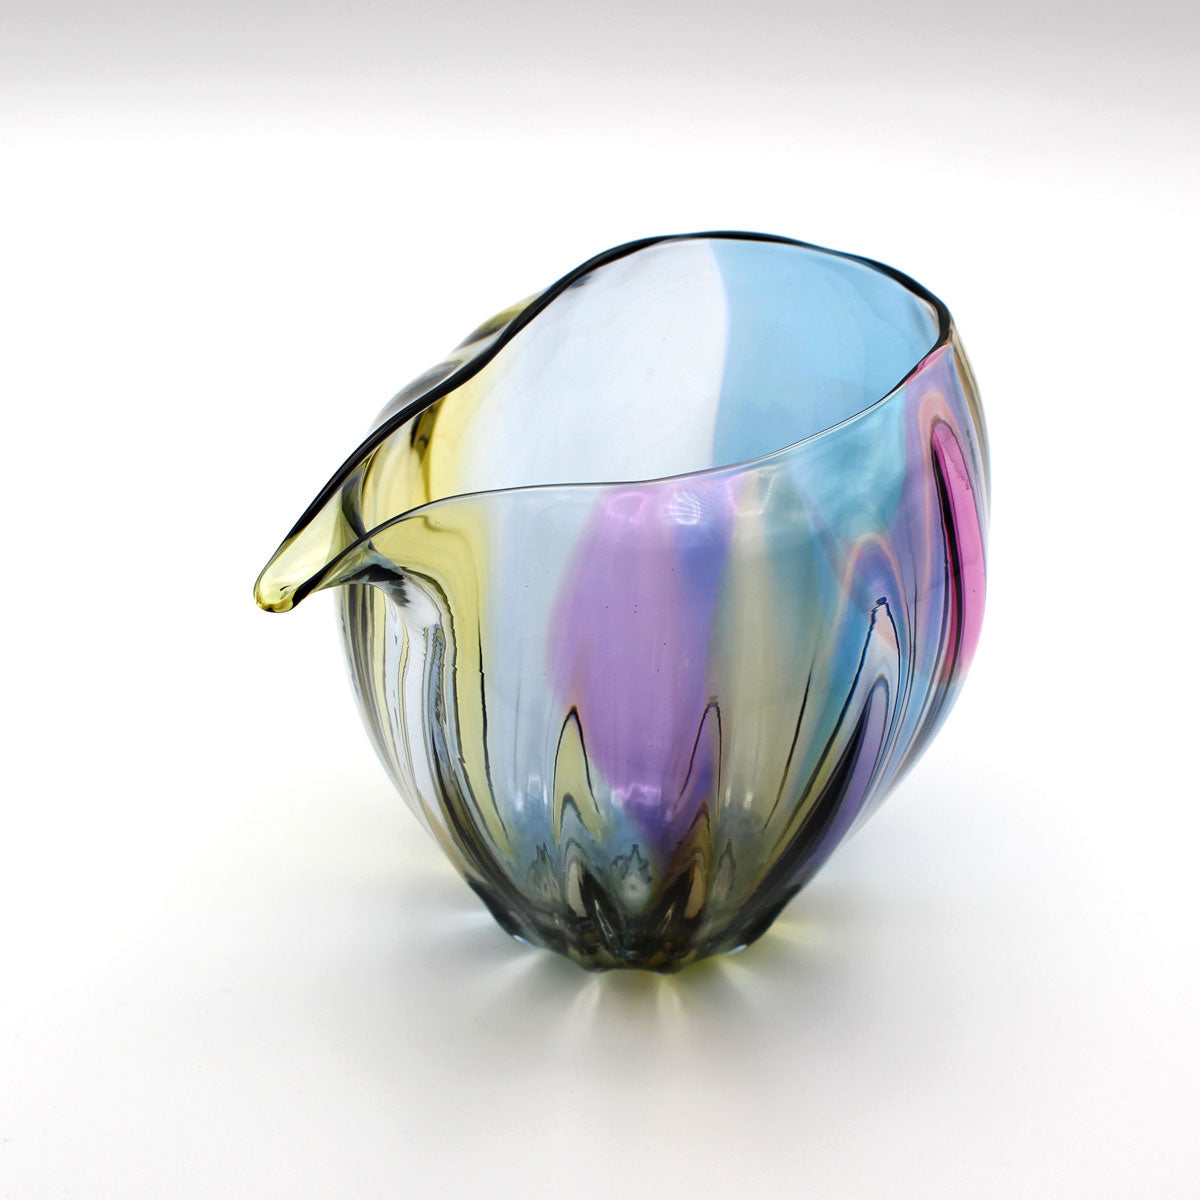 glasscalico グラスキャリコ ハンドメイド ガラス酒器 earth (アース) ライン 冷酒器セット (片口・ぐい呑 2個)